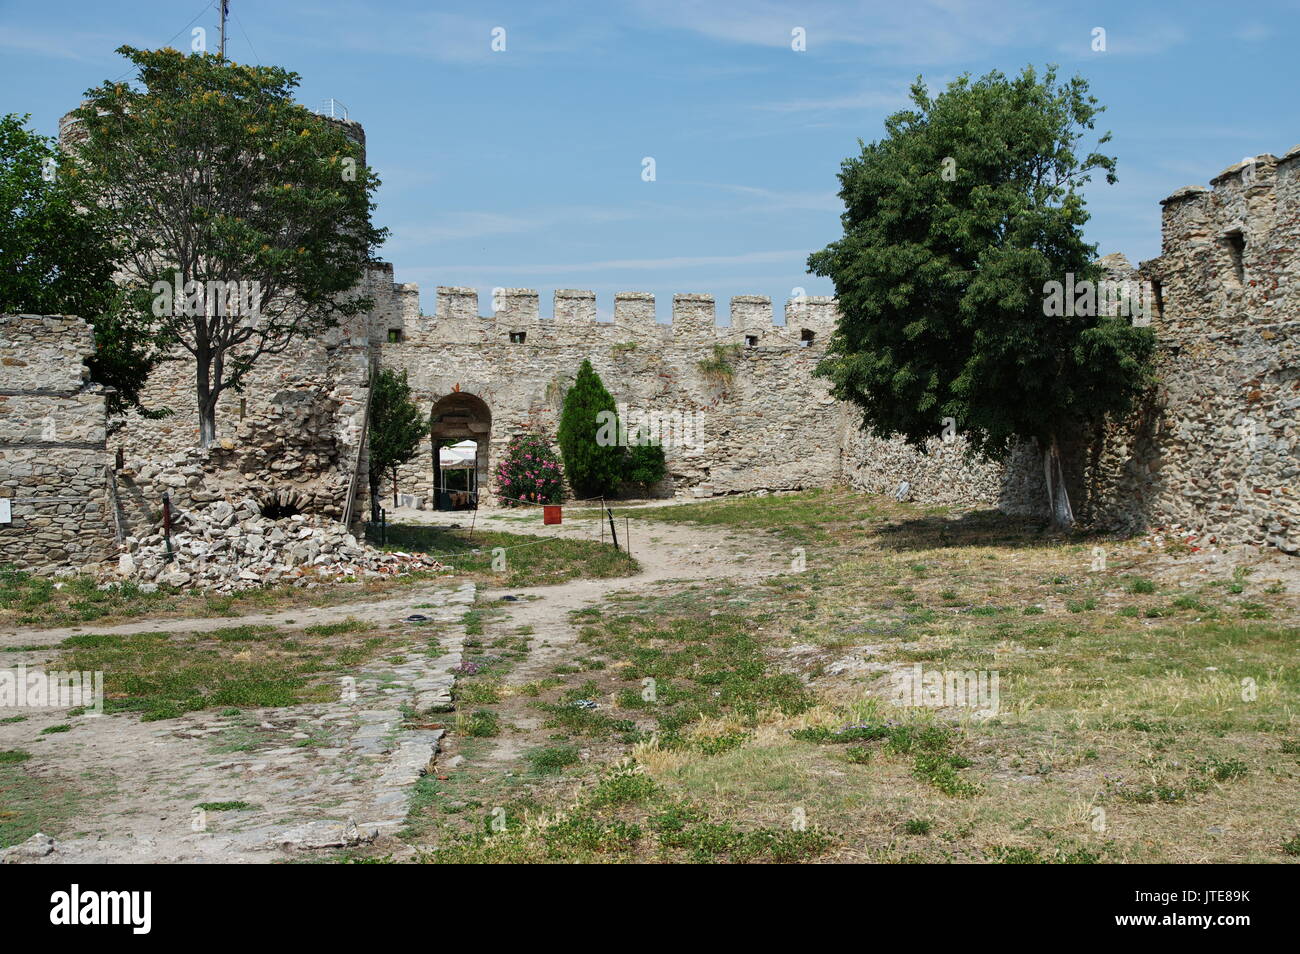 La ville de Kavala, dans le nord de la Grèce, dans la région de l'Macedonia-Thrace, situé sur la mer Egée. Murs de la citadelle byzantine. Banque D'Images